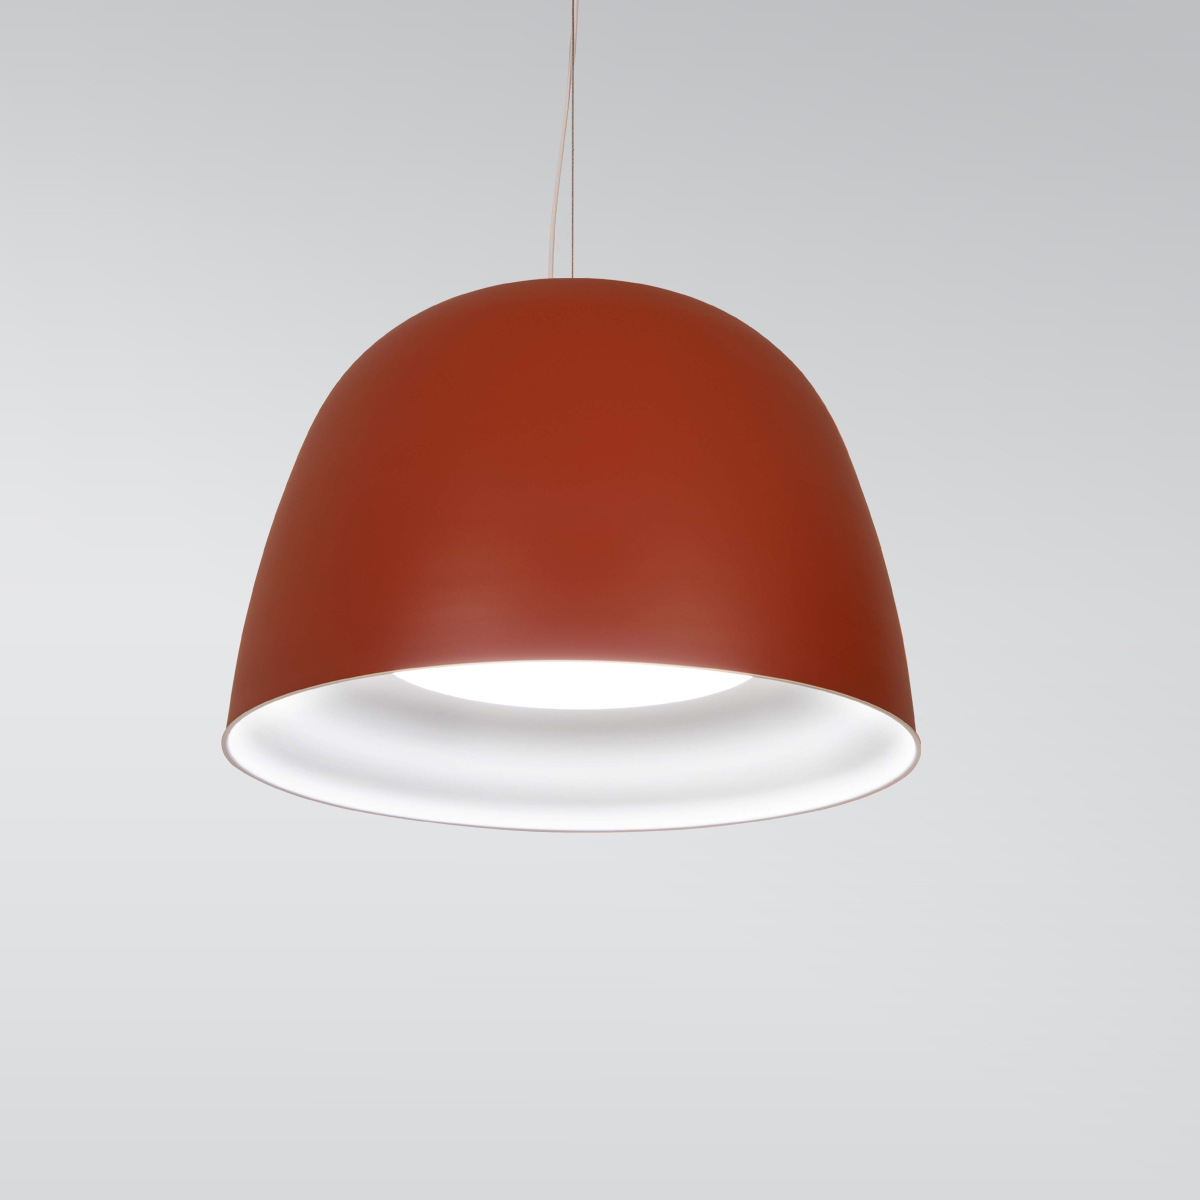 Modern bell pendant light by Visa Lighting